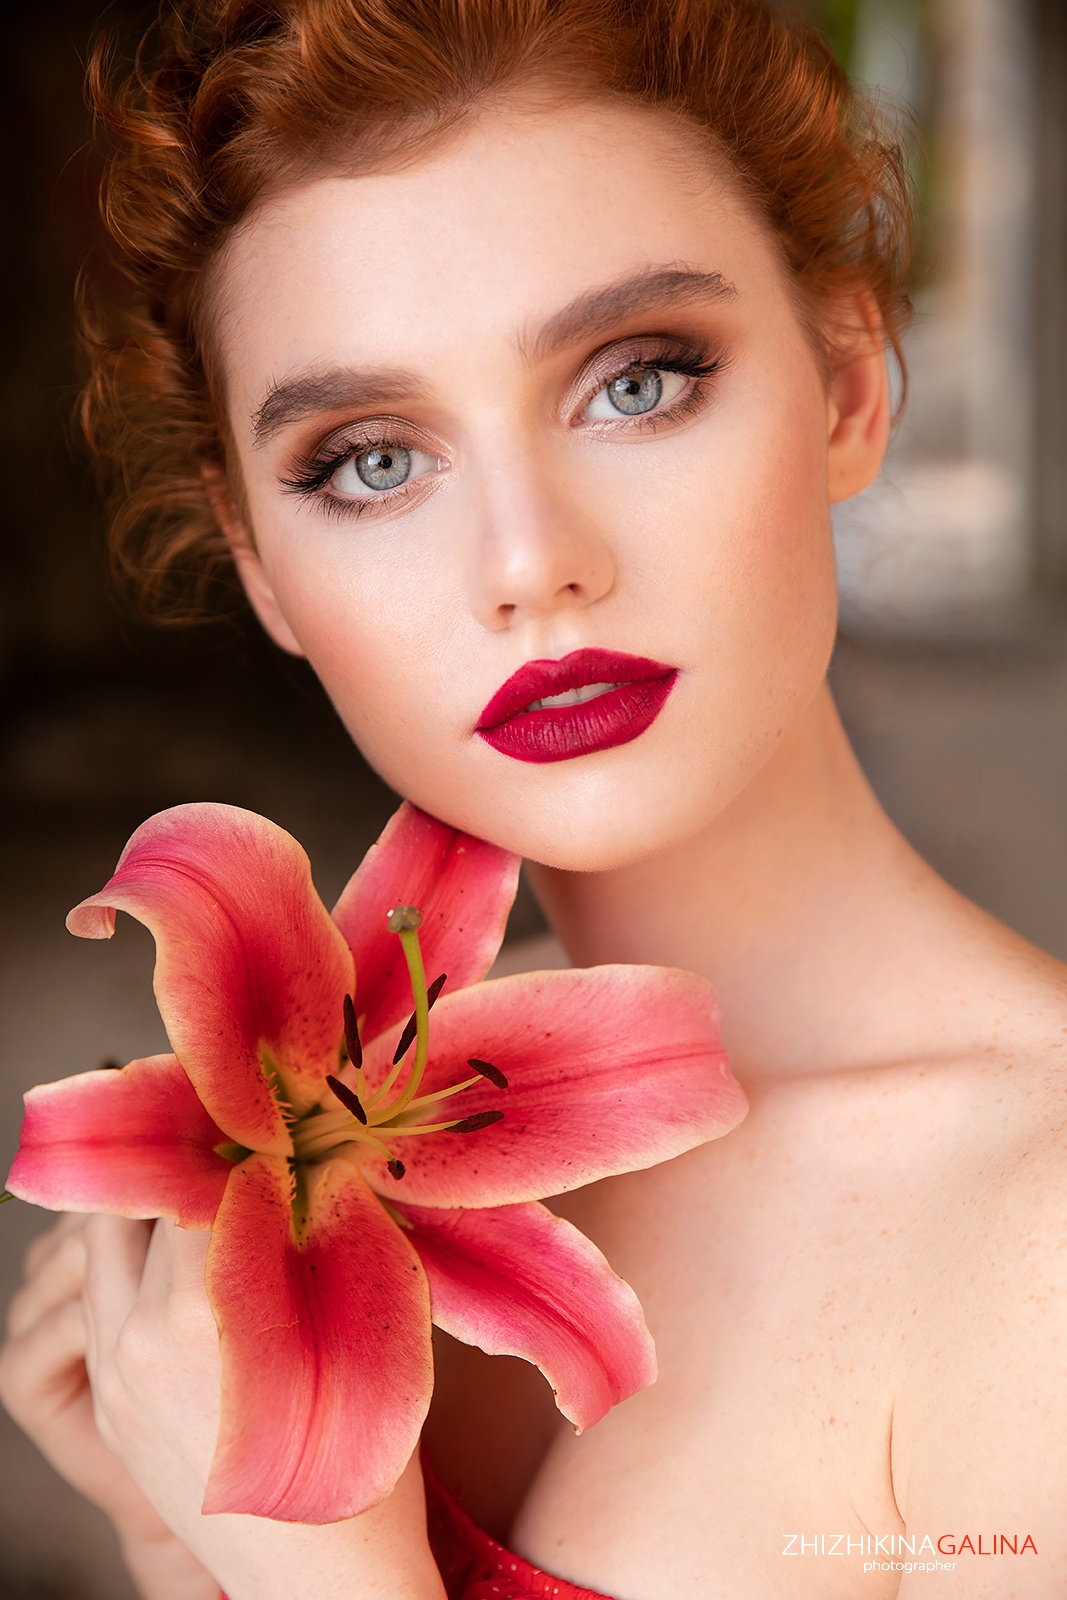 People 1067x1600 flowers face makeup women red lipstick plants Galina Zhizhikina